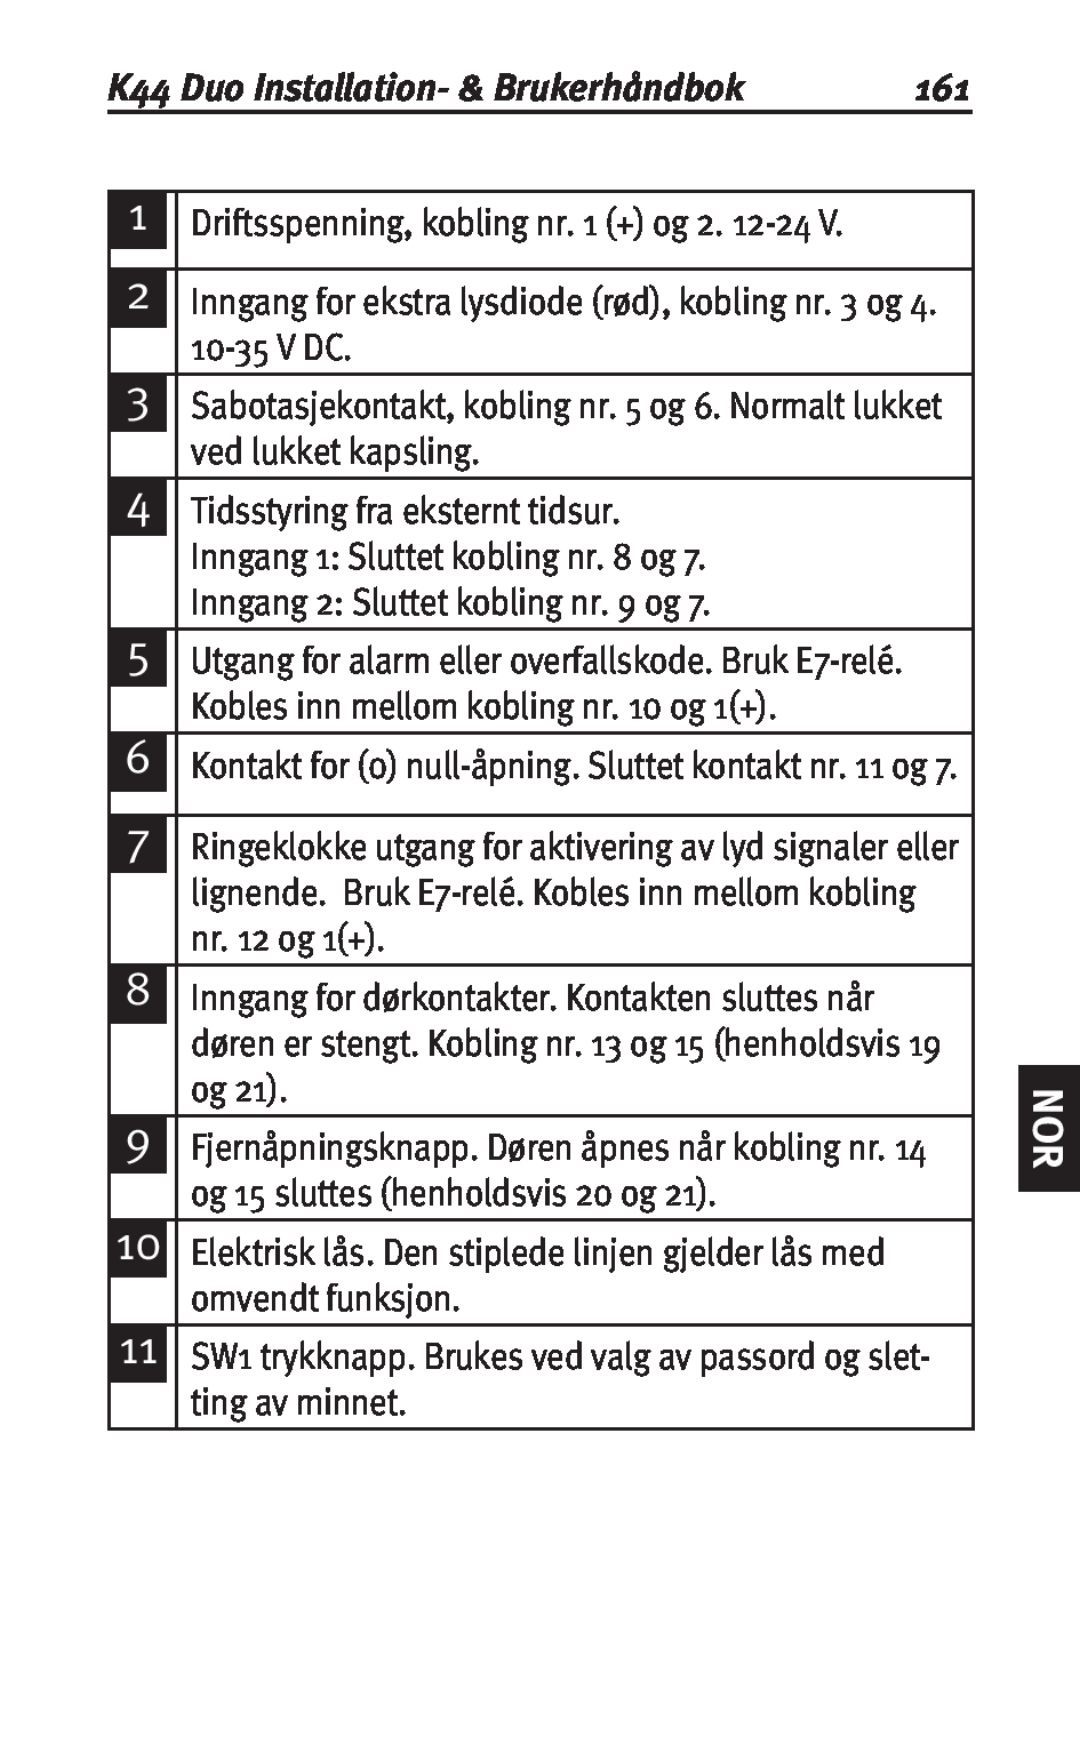 Siemens user manual K44 Duo Installation- & Brukerhåndbok 